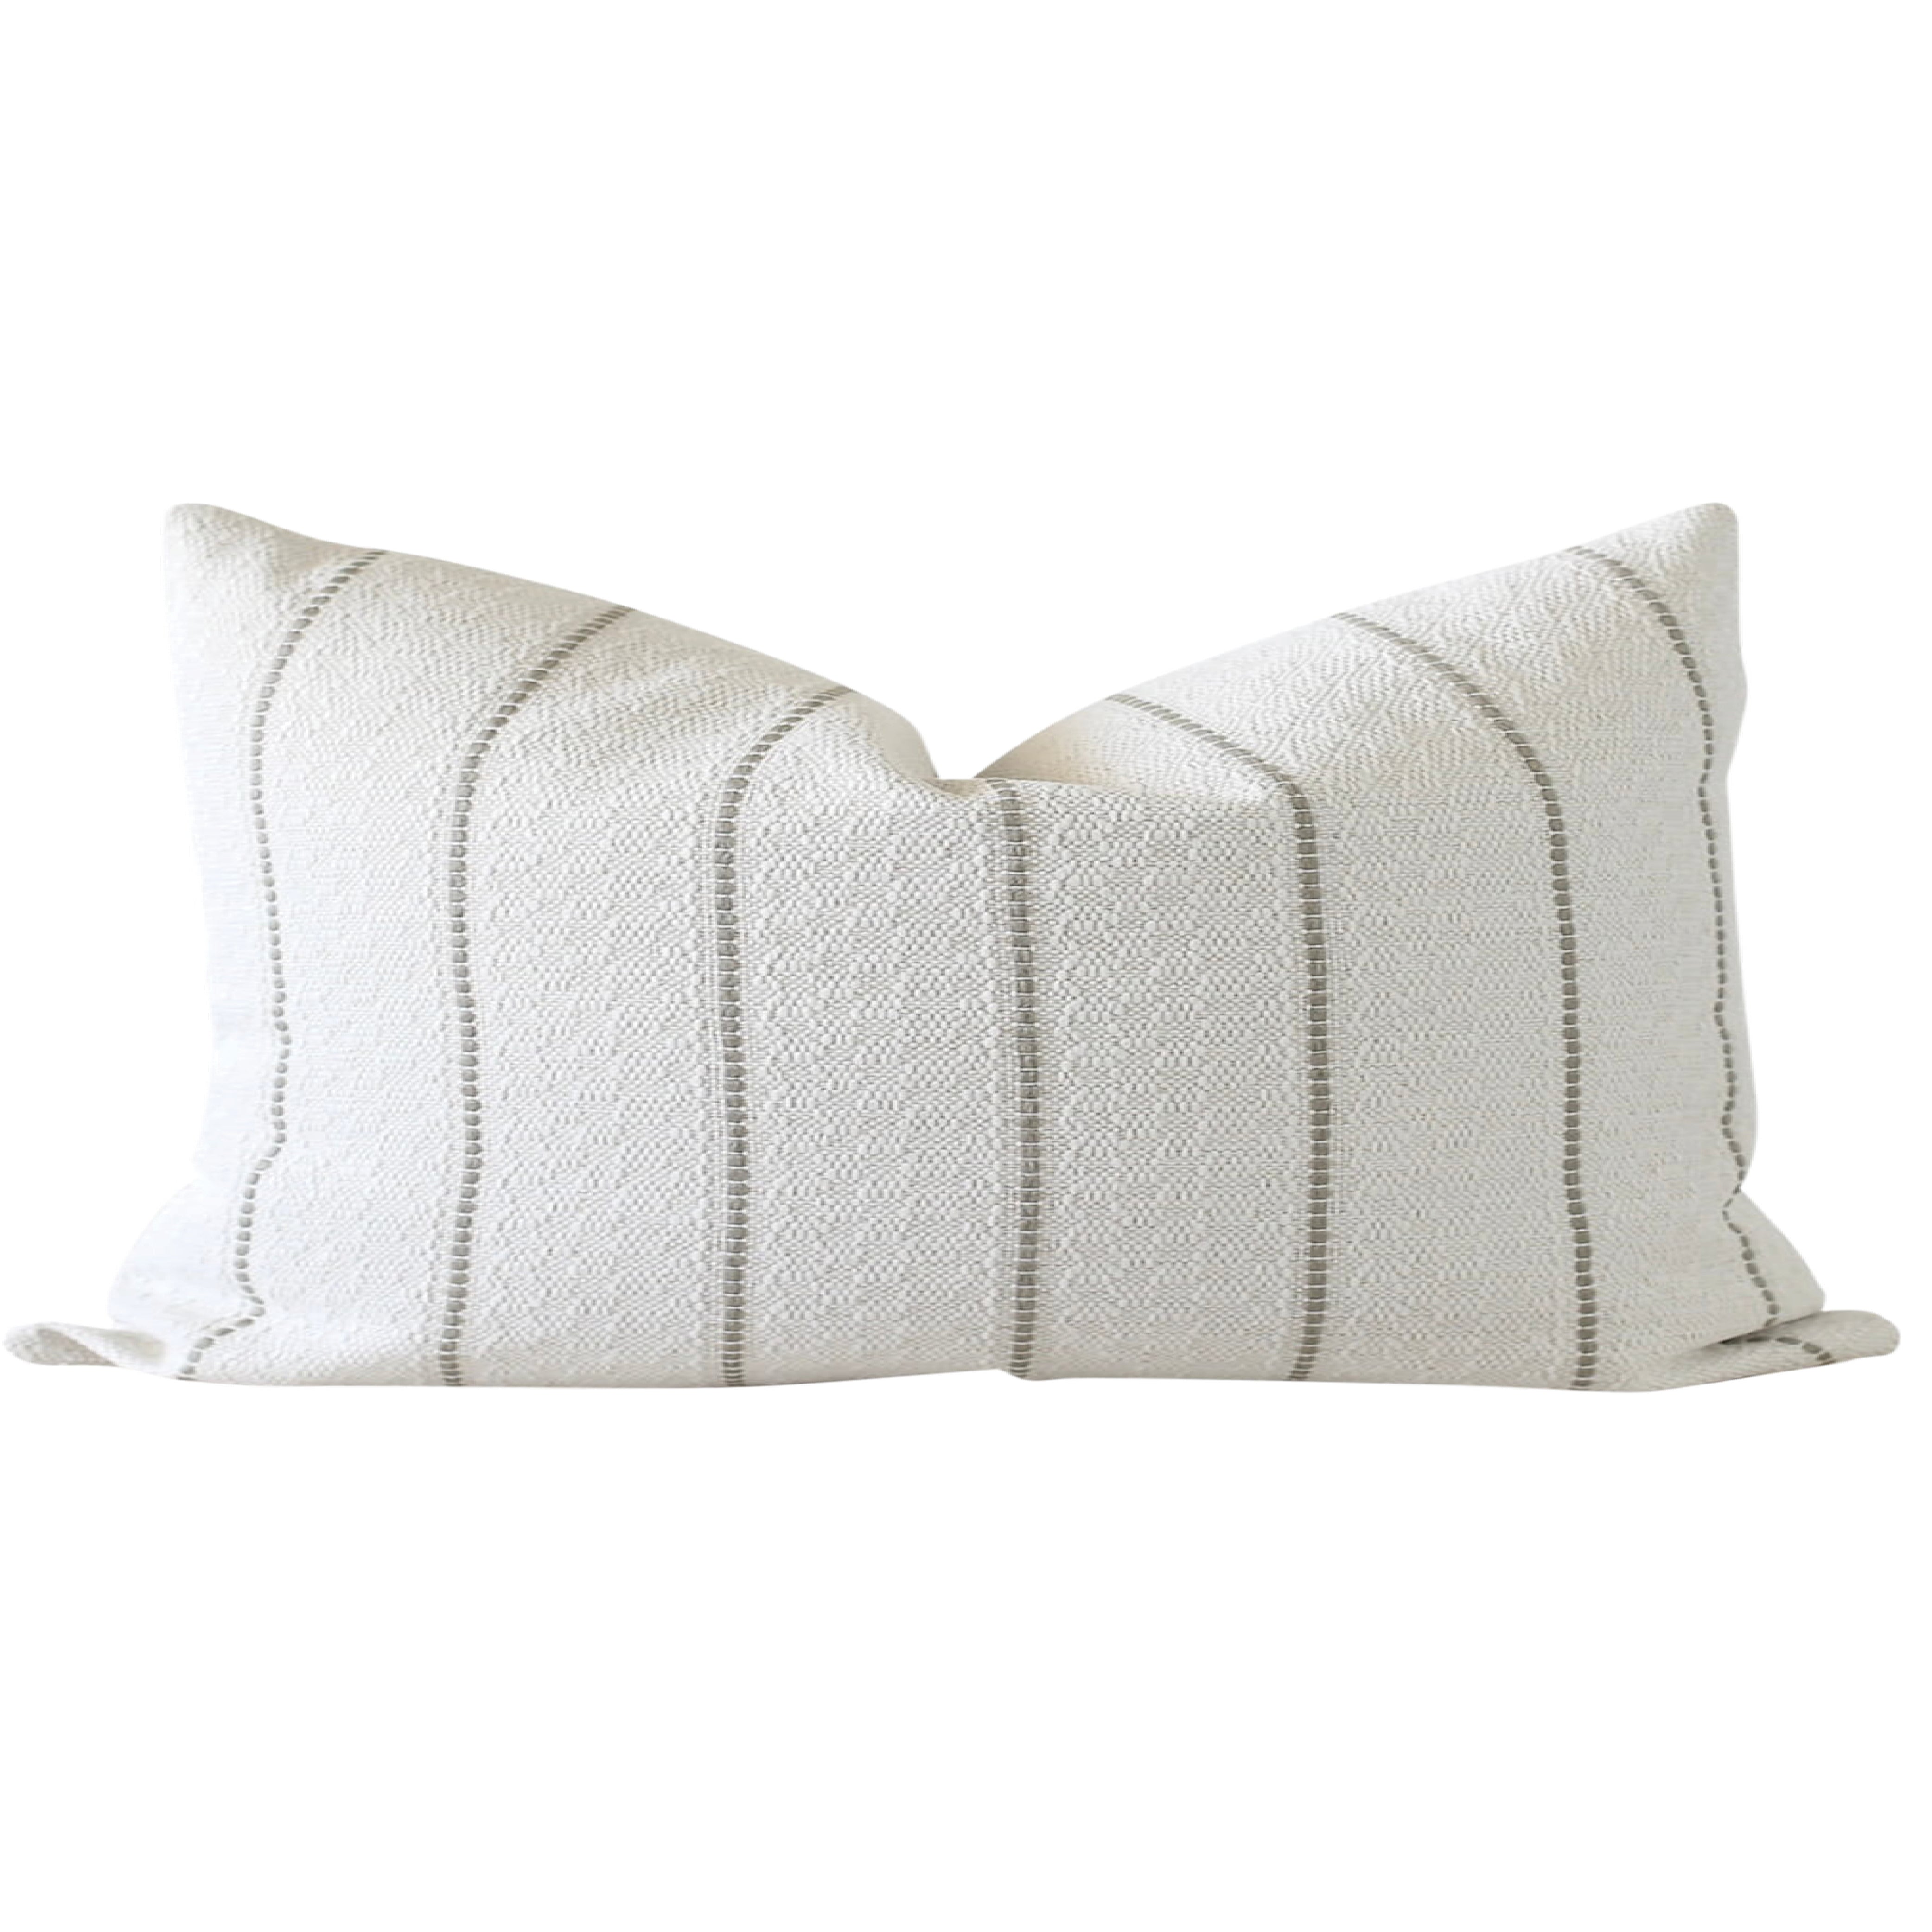 White Textured Throw Pillow, Striped Pillow Cover, Farmhouse Pillow